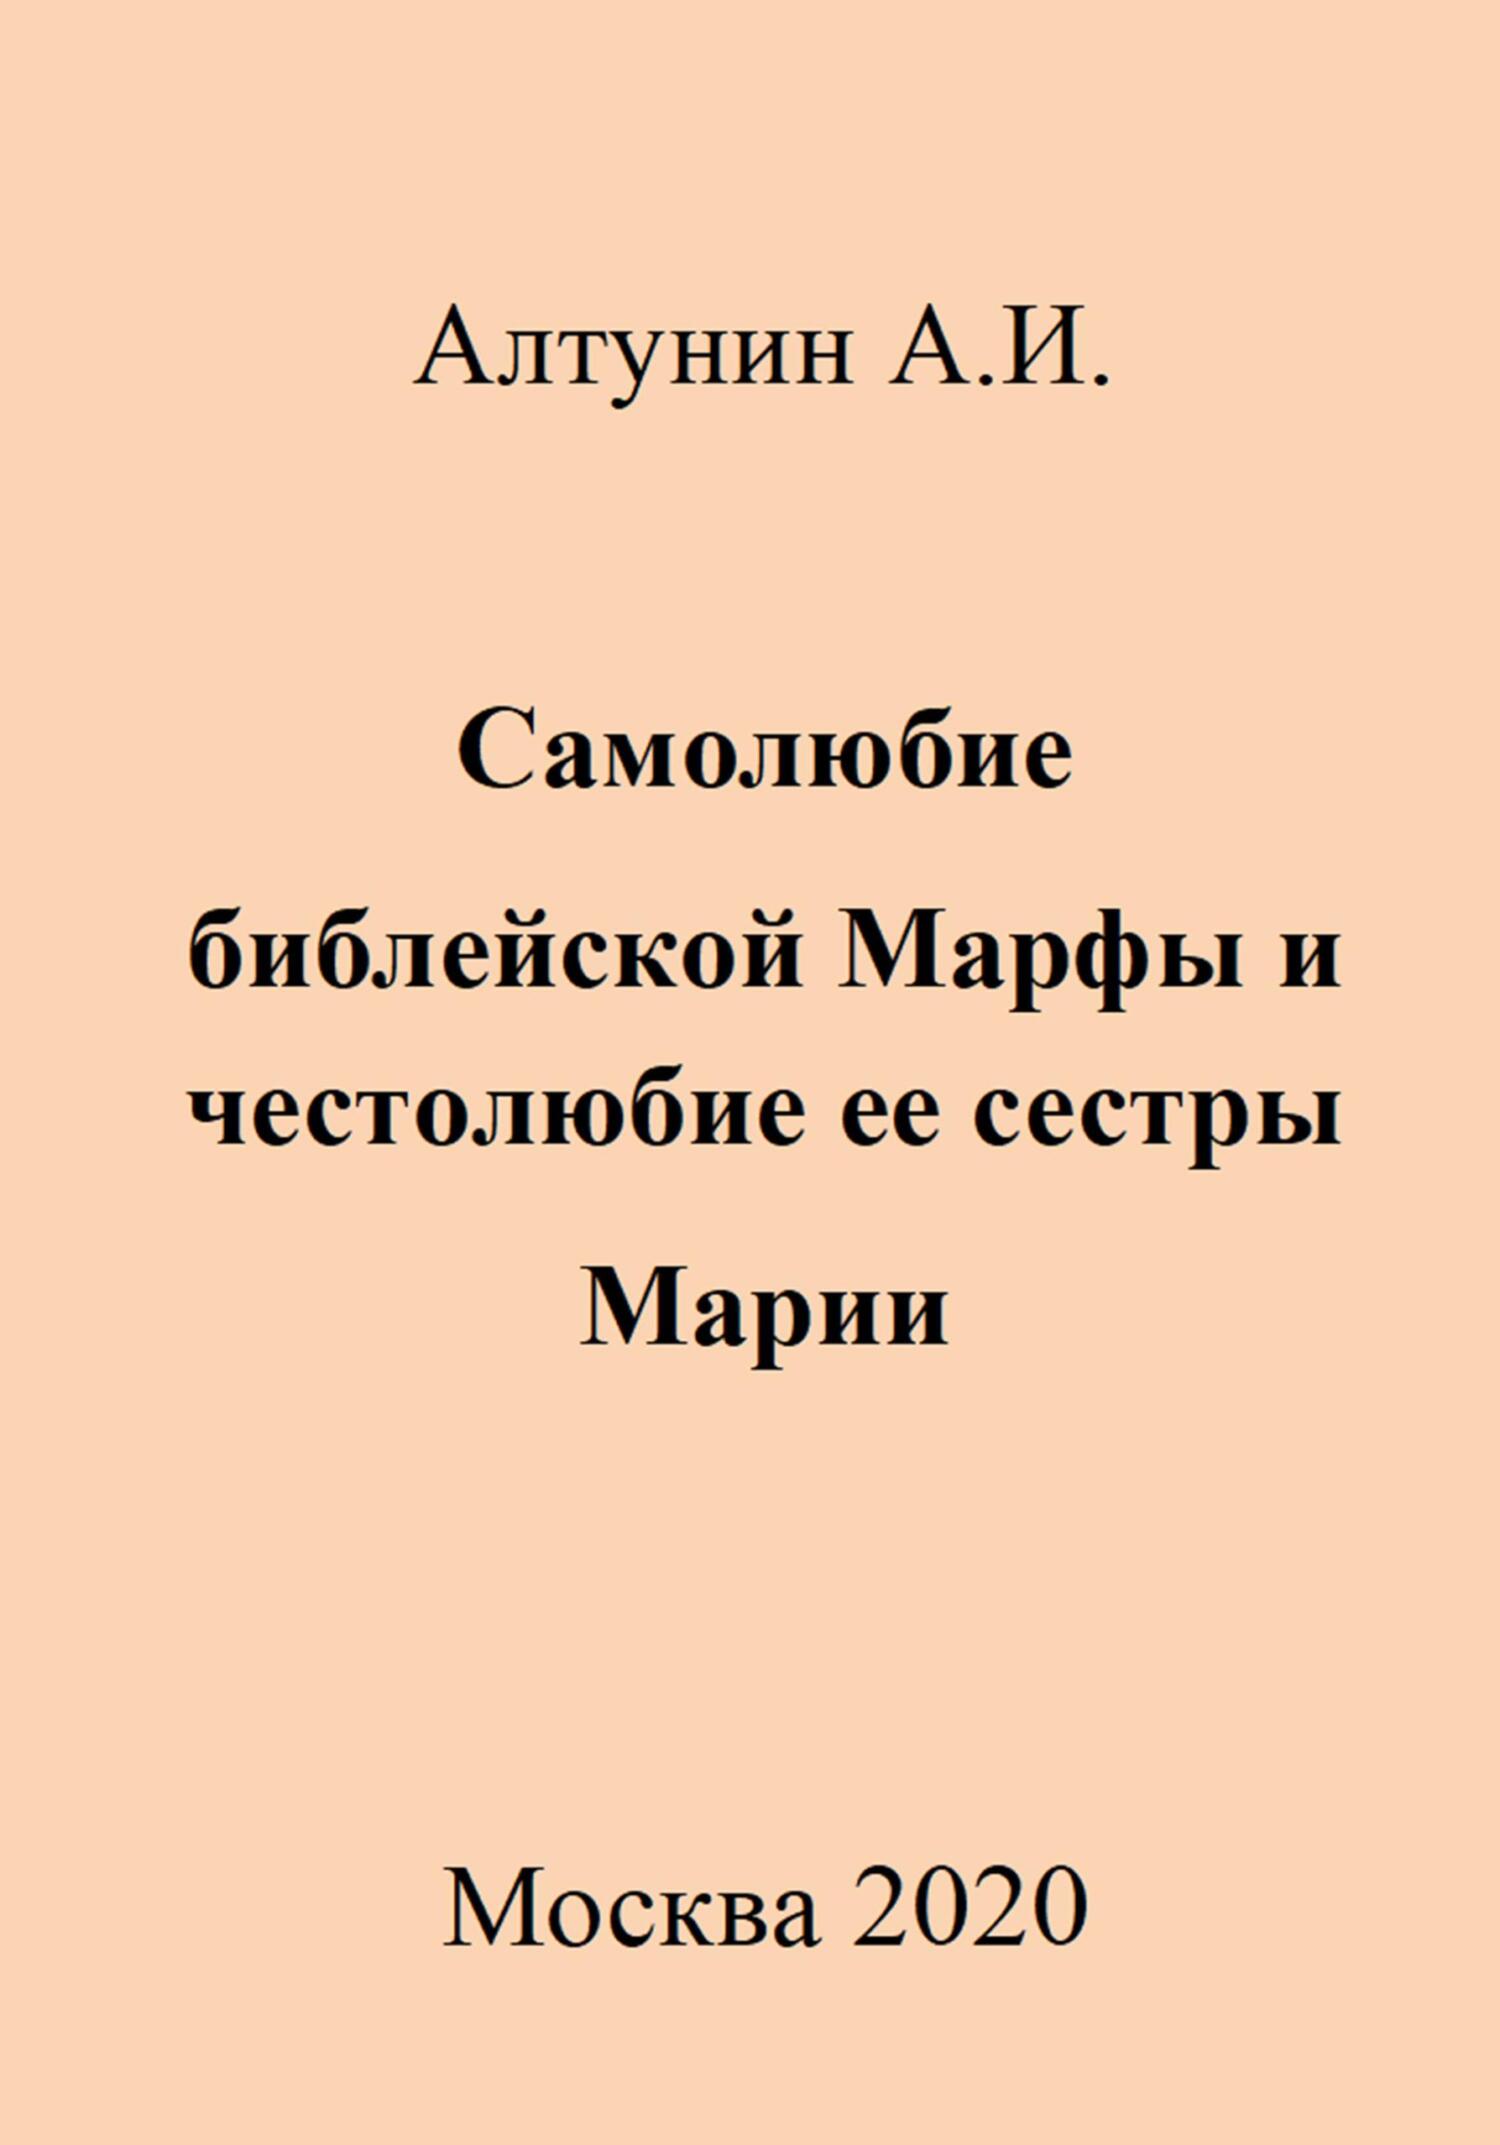 Самолюбие библейской Марфы и честолюбие ее сестры Марии - Александр Иванович Алтунин